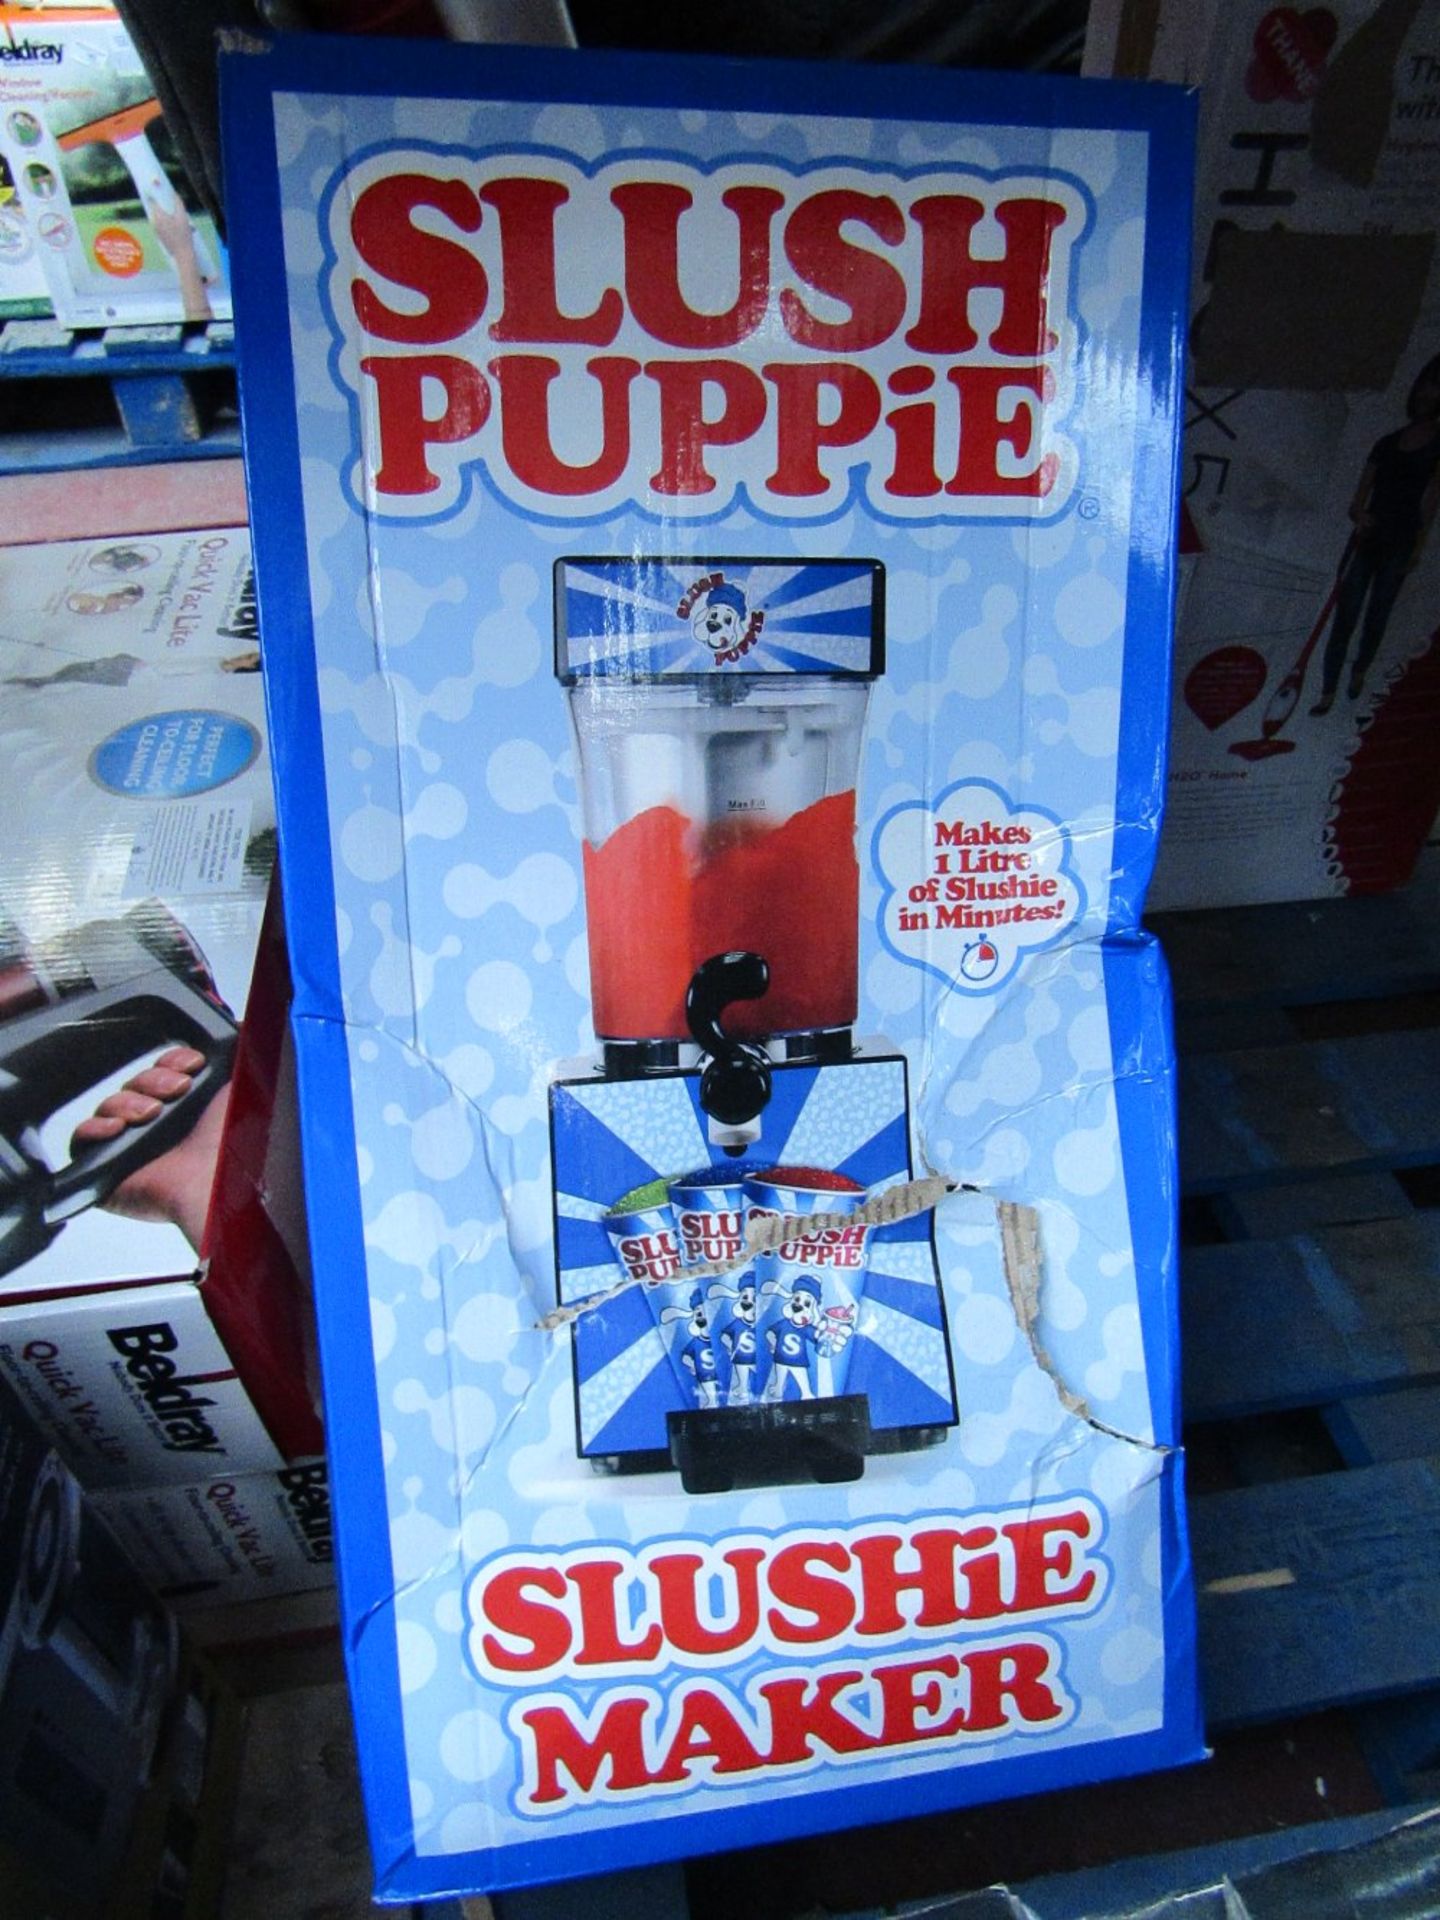 Slush Puppie slushie maker. Tested working & boxed.